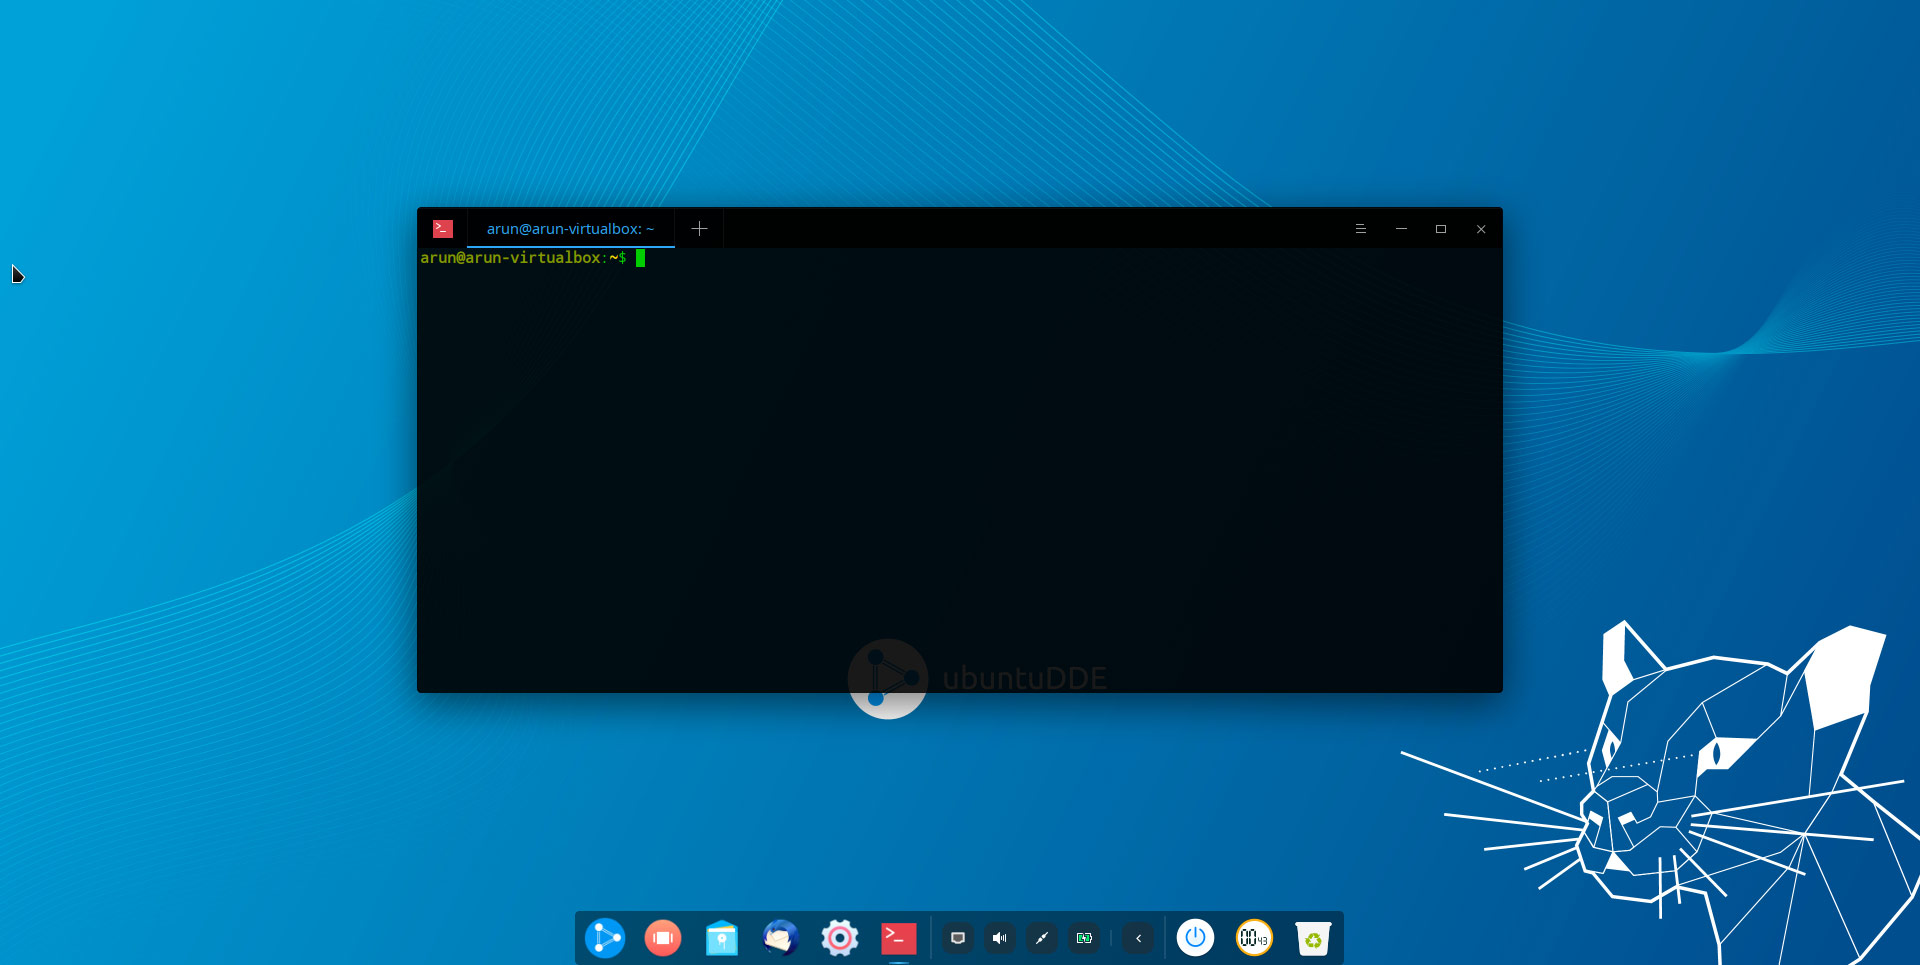 Окно терминала UbuntuDDE